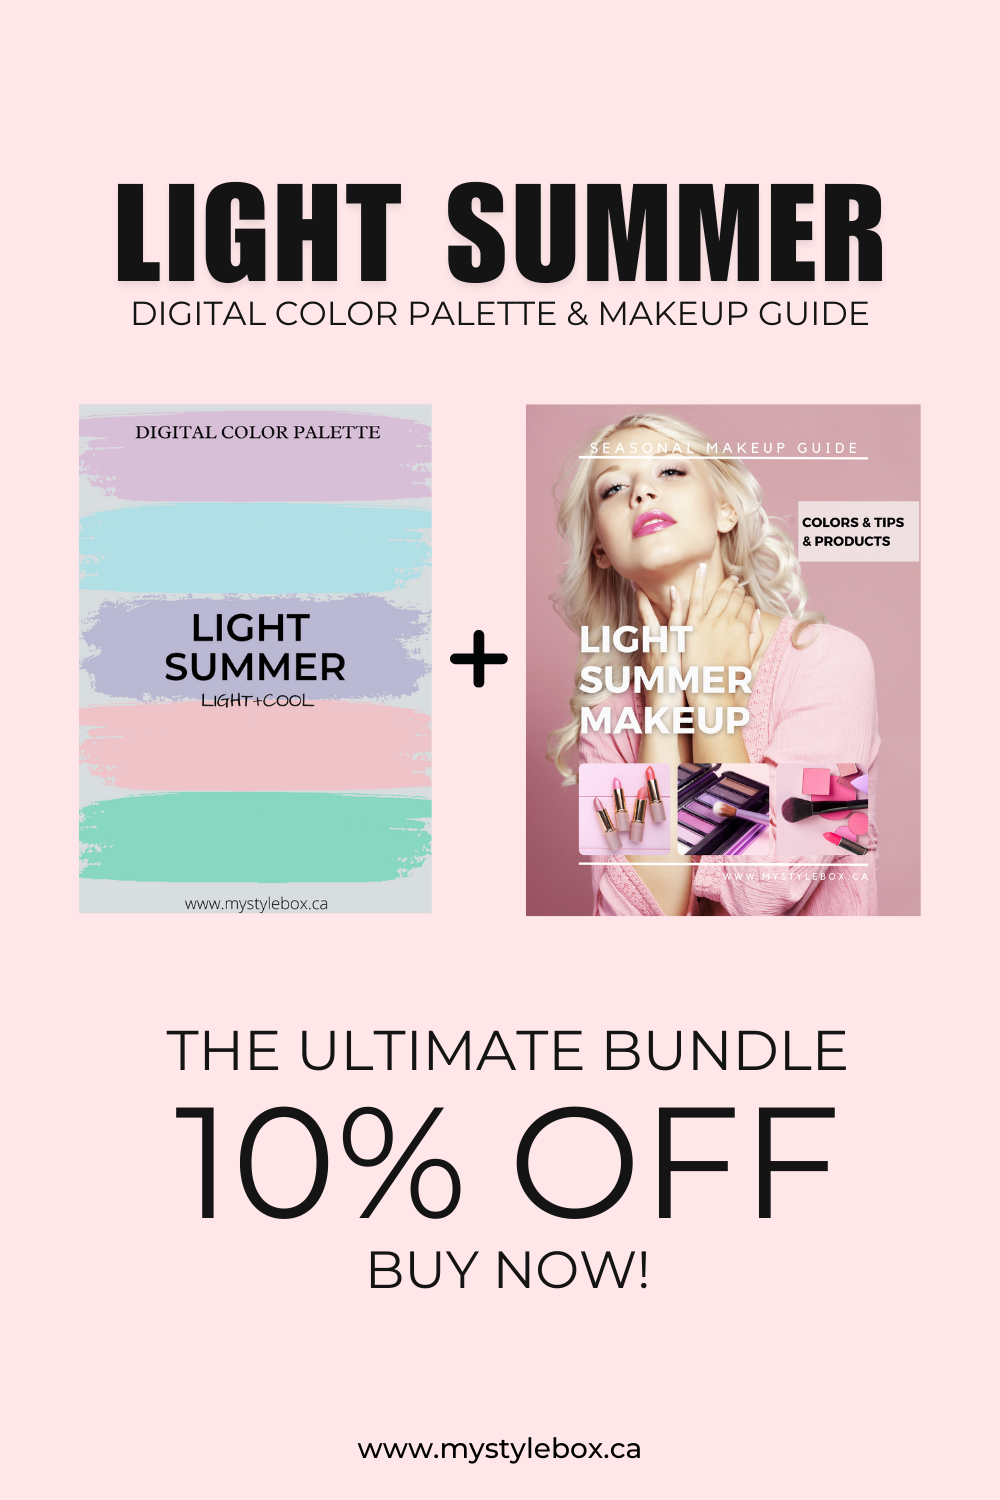 Light Summer Digital Color Palette and Makeup Guide